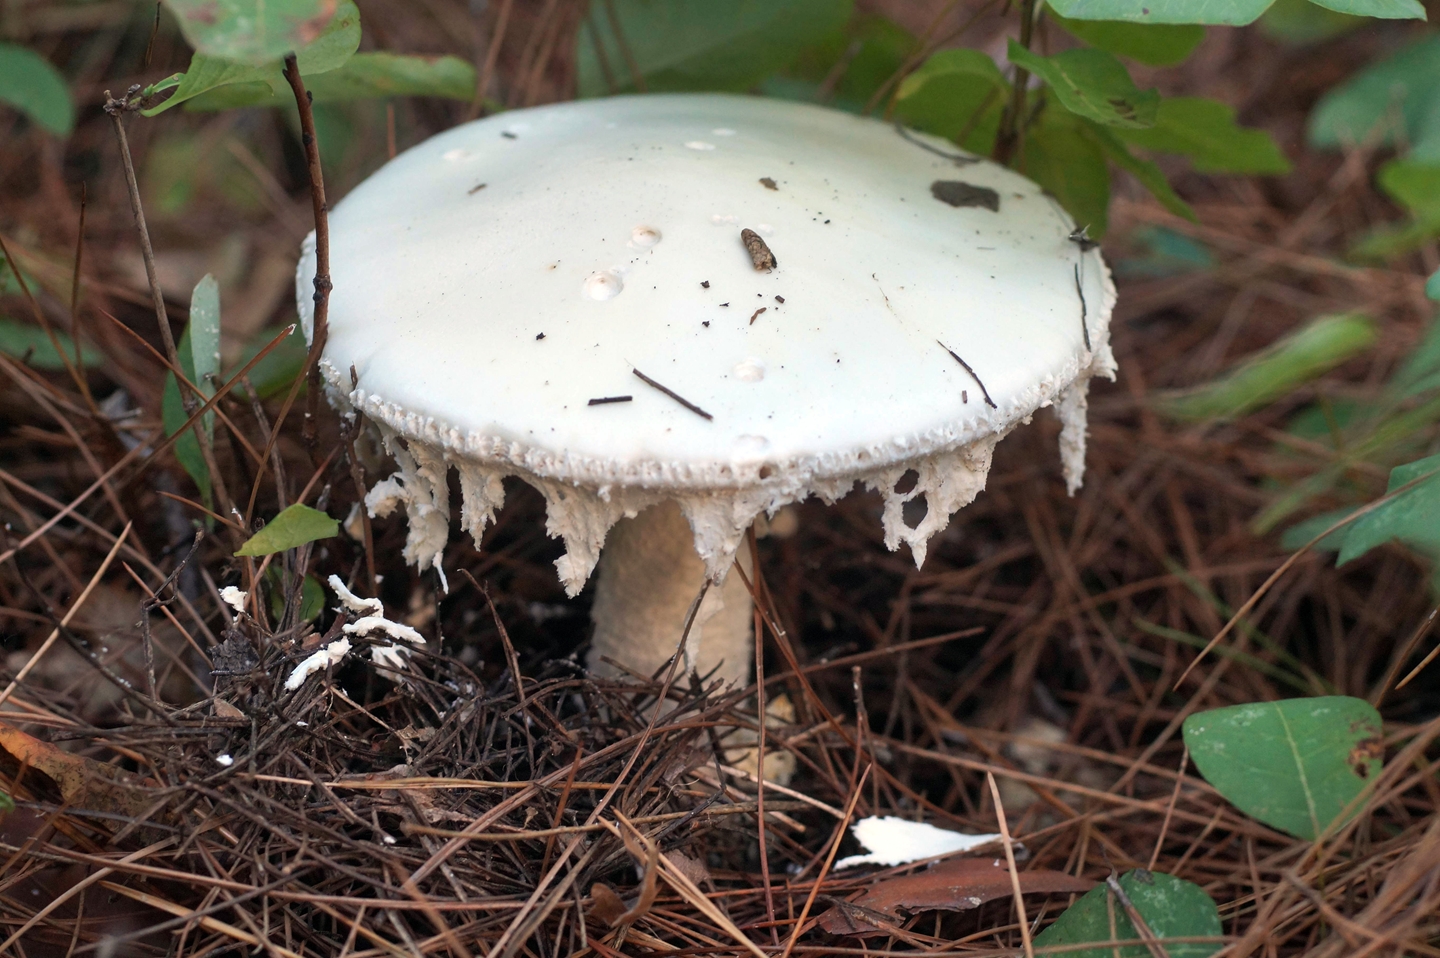 Малоизвестные, но не менее важные мухоморы - грибы собираем